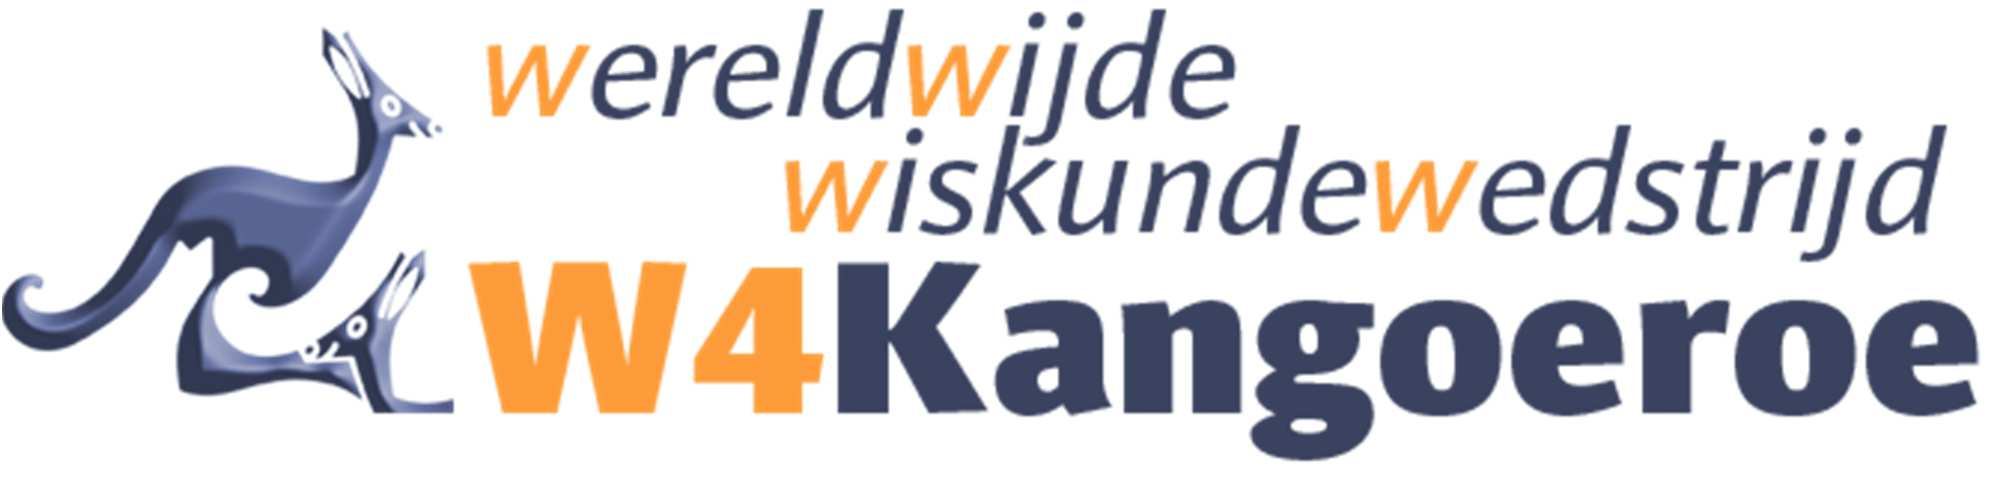 Jaarlijks wordt in maart de W4Kangoeroe reken- en wiskundewedstrijd gehouden in ruim 60 landen (met ruim 6,5 miljoen deelnemers!). Dat is werkelijk uniek! In Nederland namen in 2015 ruim 125.